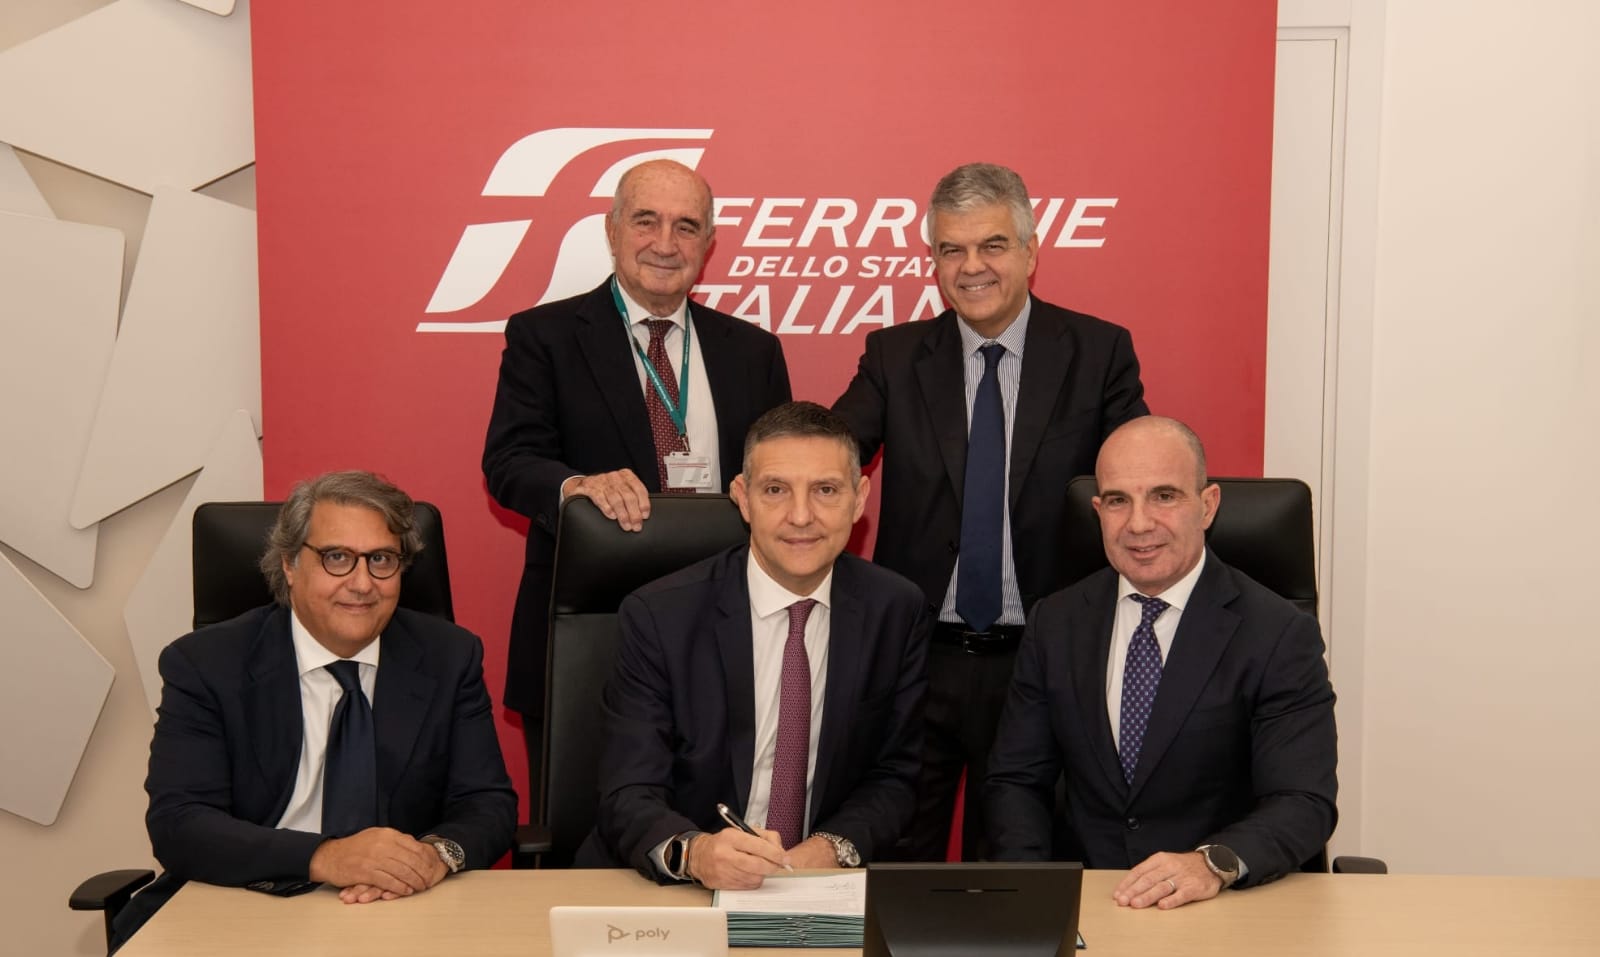 Il Gruppo FS, guidato da Luigi Ferraris, stringe l'accordo con Almaviva per lo sviluppo di soluzioni digitali